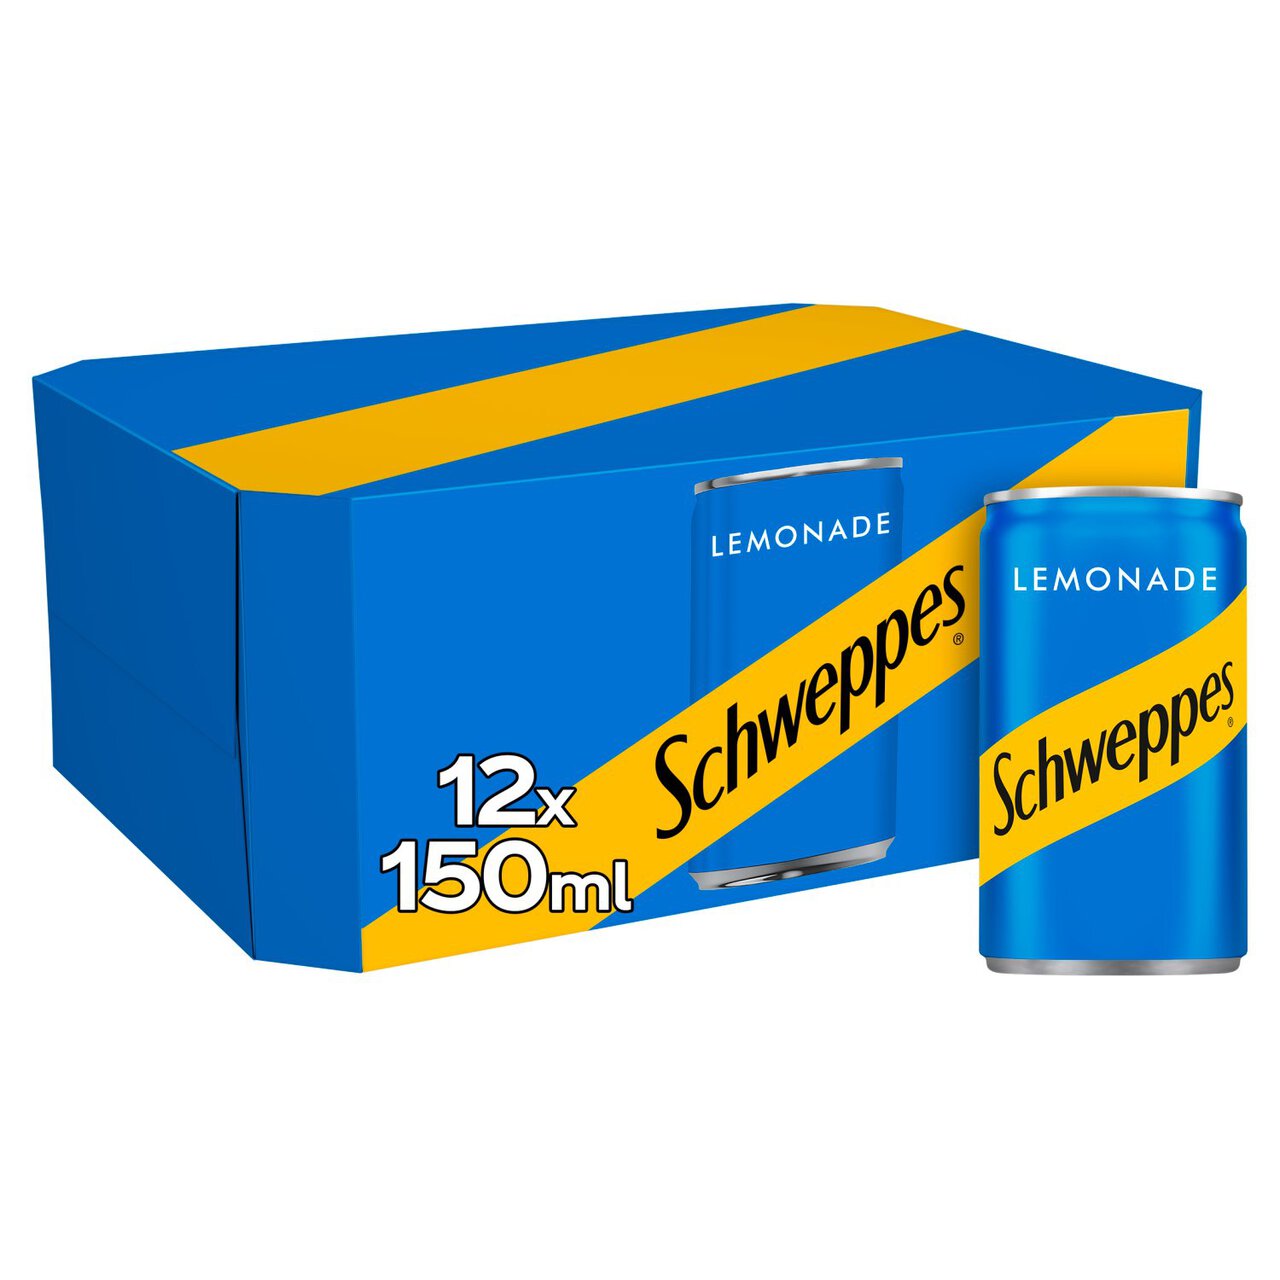 Schweppes Lemonade 12 x 150ml